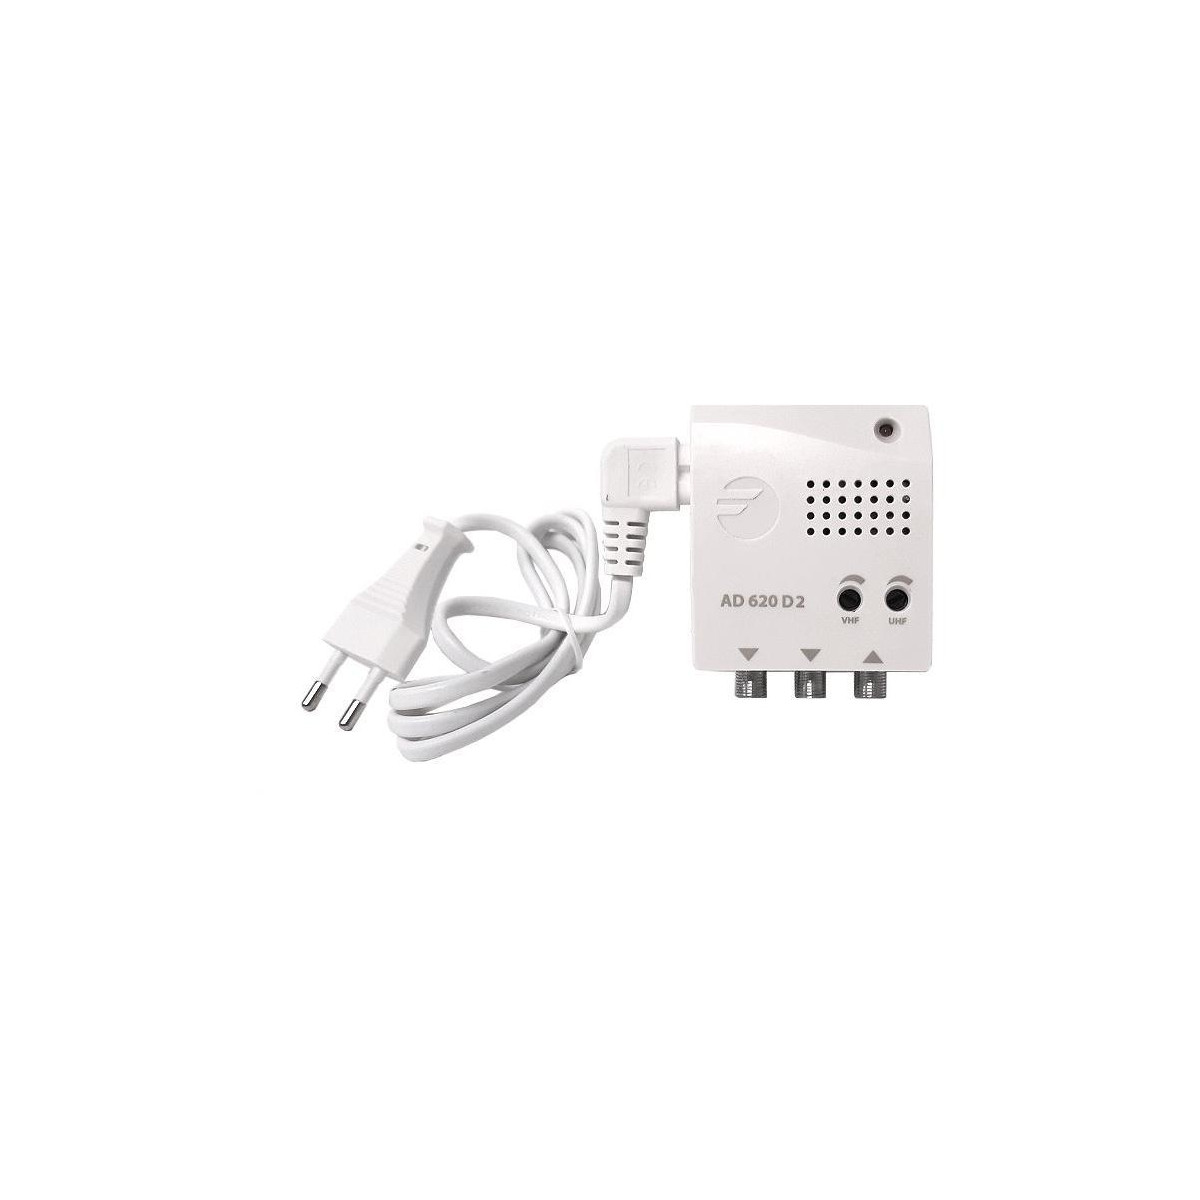 Fagor AD 620 Plus D2 5G/LTE700: Vysokovýkonný Zesilovač pro VHF/U - Optimalizováno pro maximální dosah signálu